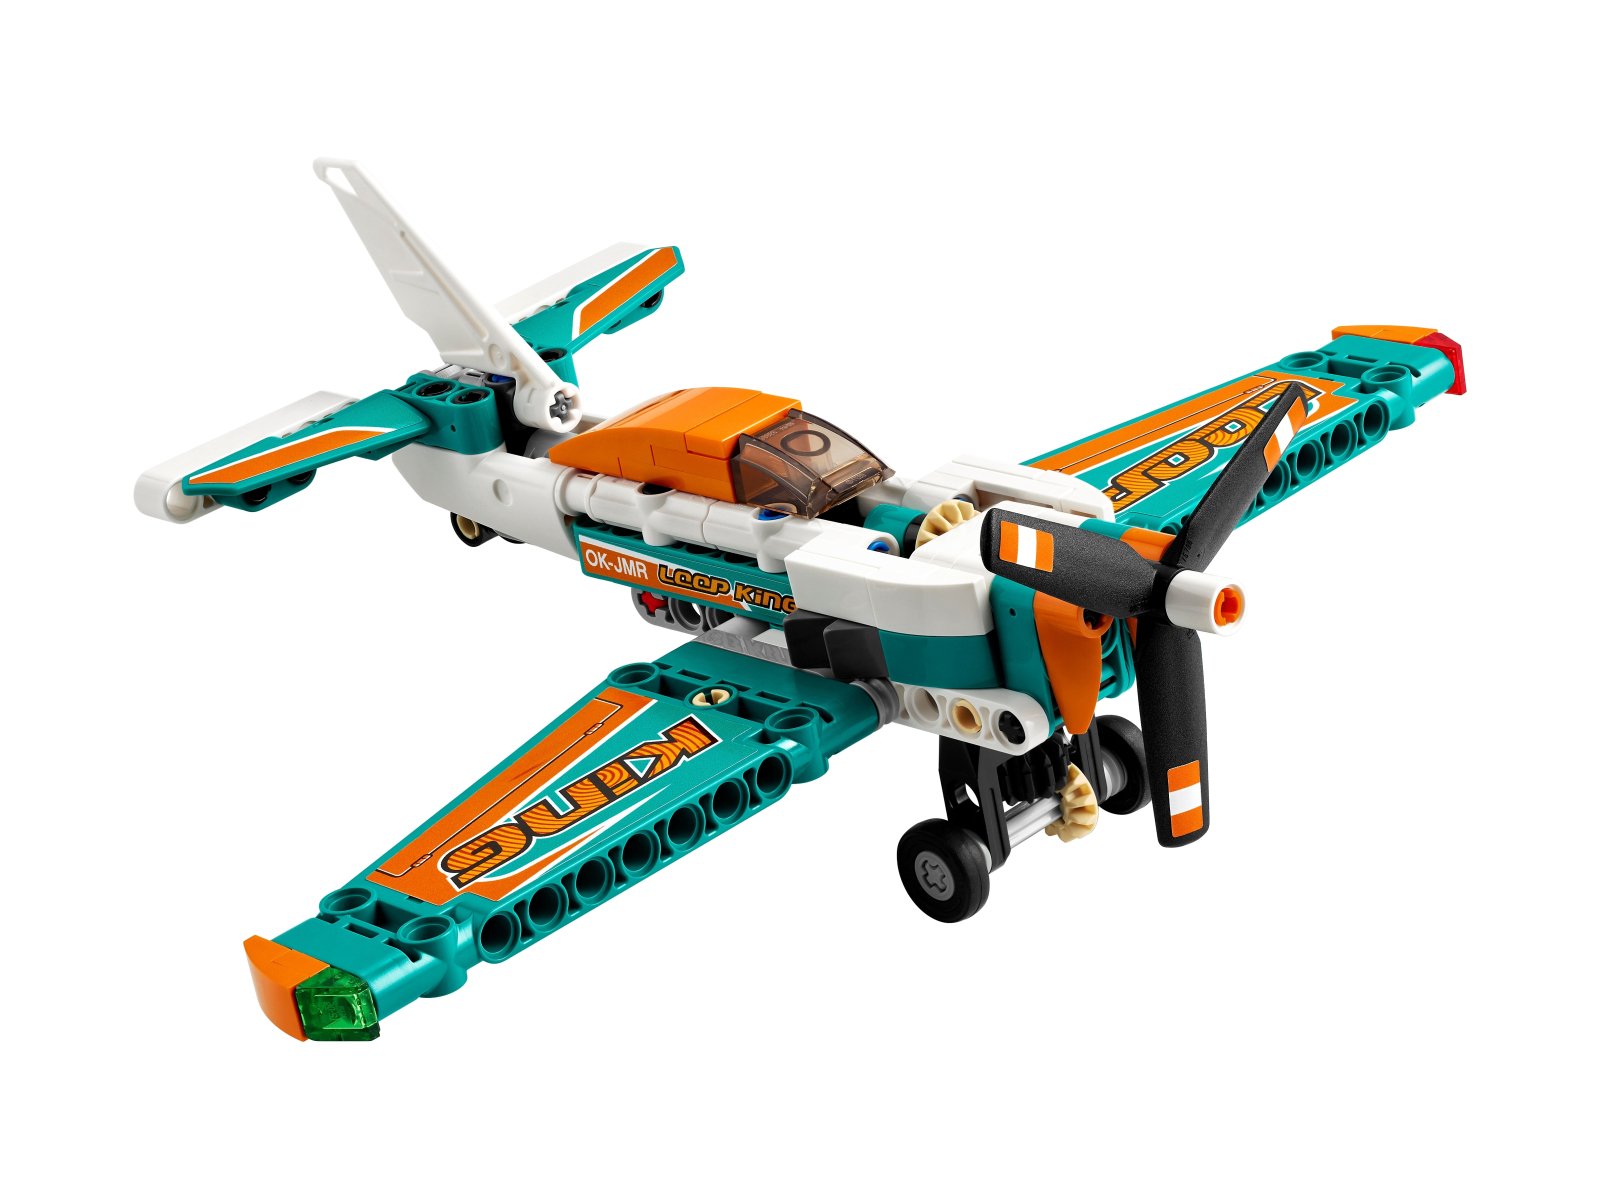 LEGO Technic Samolot wyścigowy 42117